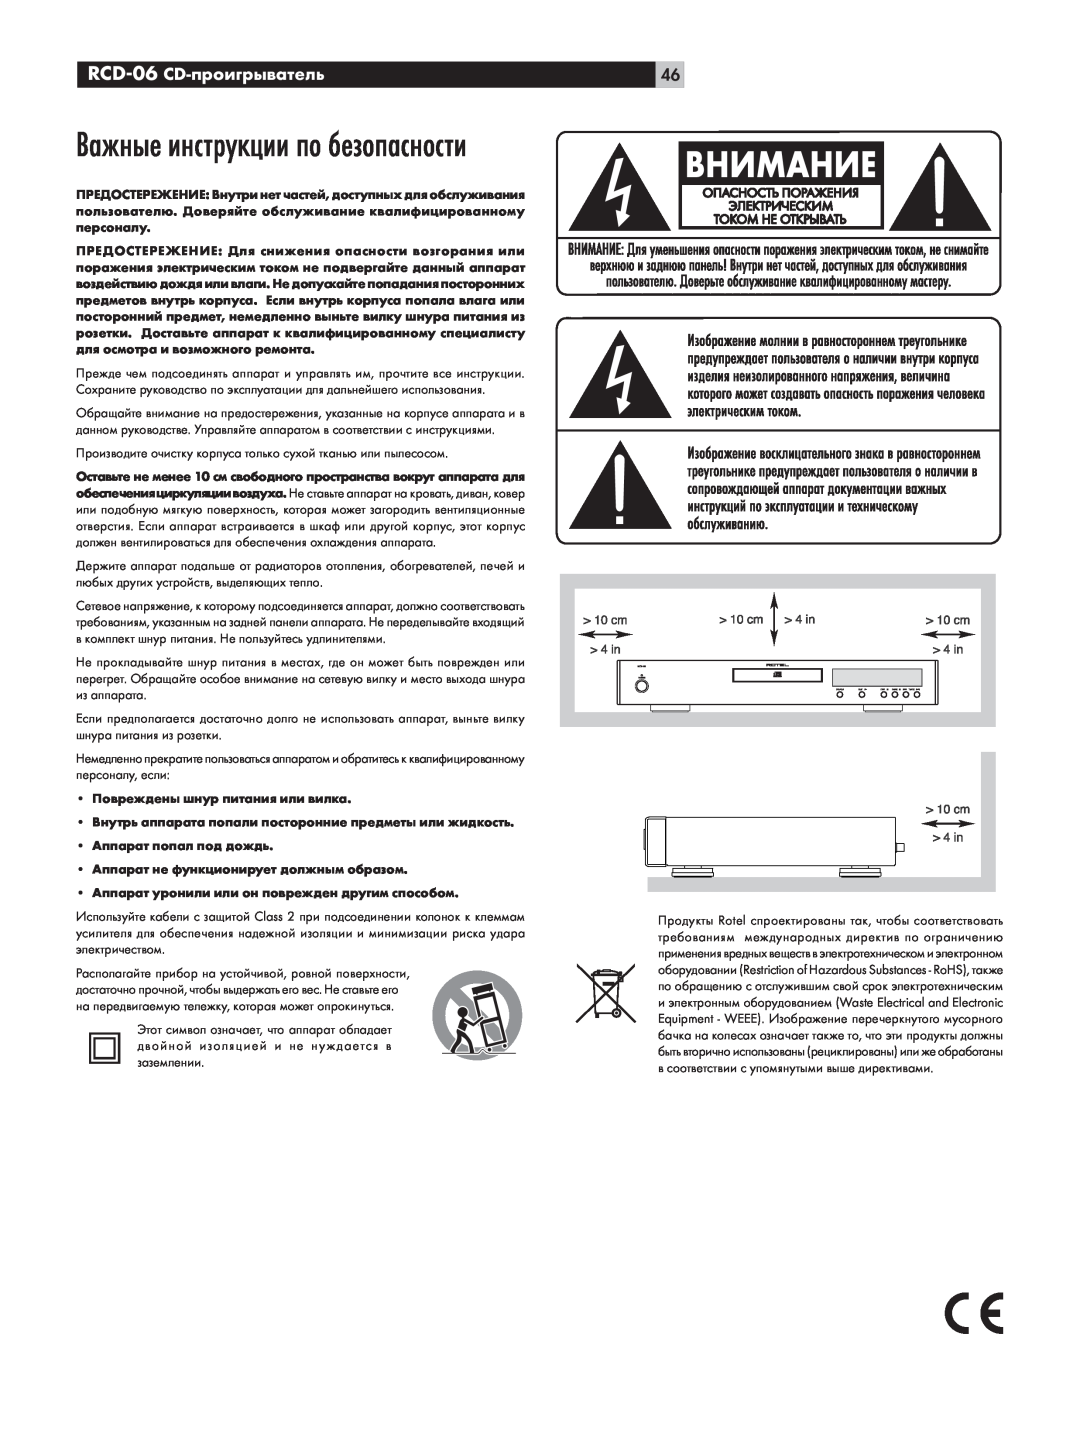 Rotel owner manual Важные инструкции по безопасности, RCD-06 CD-проигрыватель 